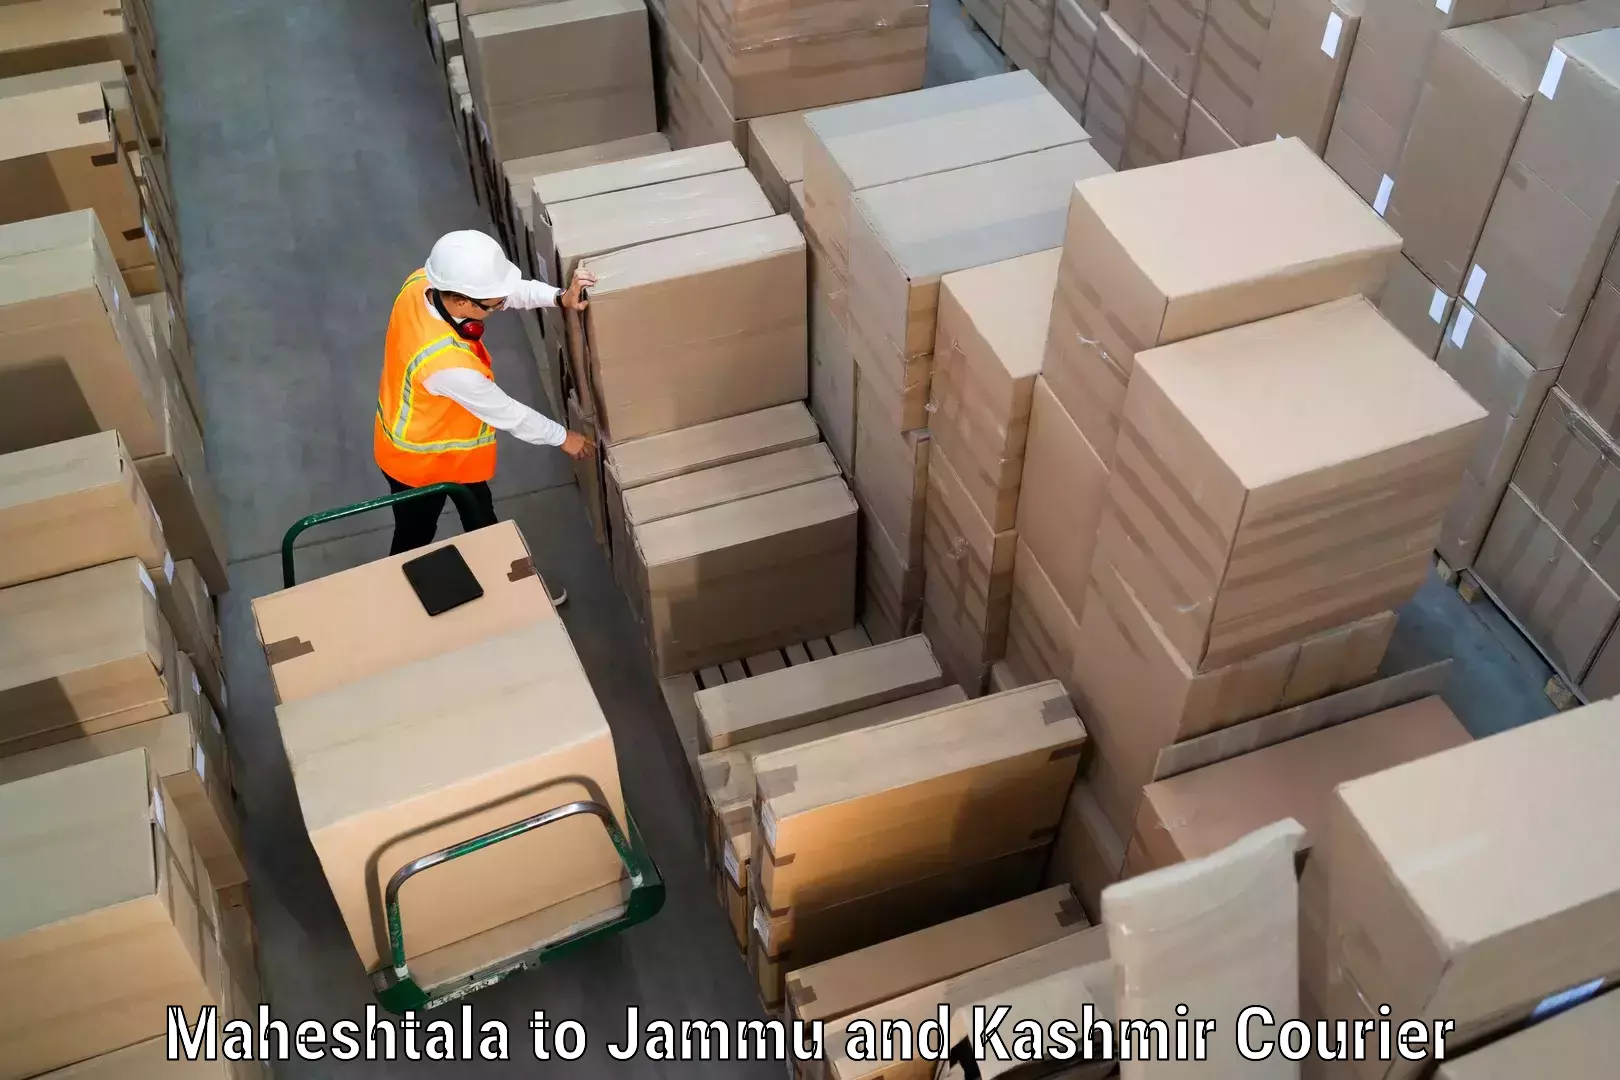 State-of-the-art courier technology in Maheshtala to Kishtwar